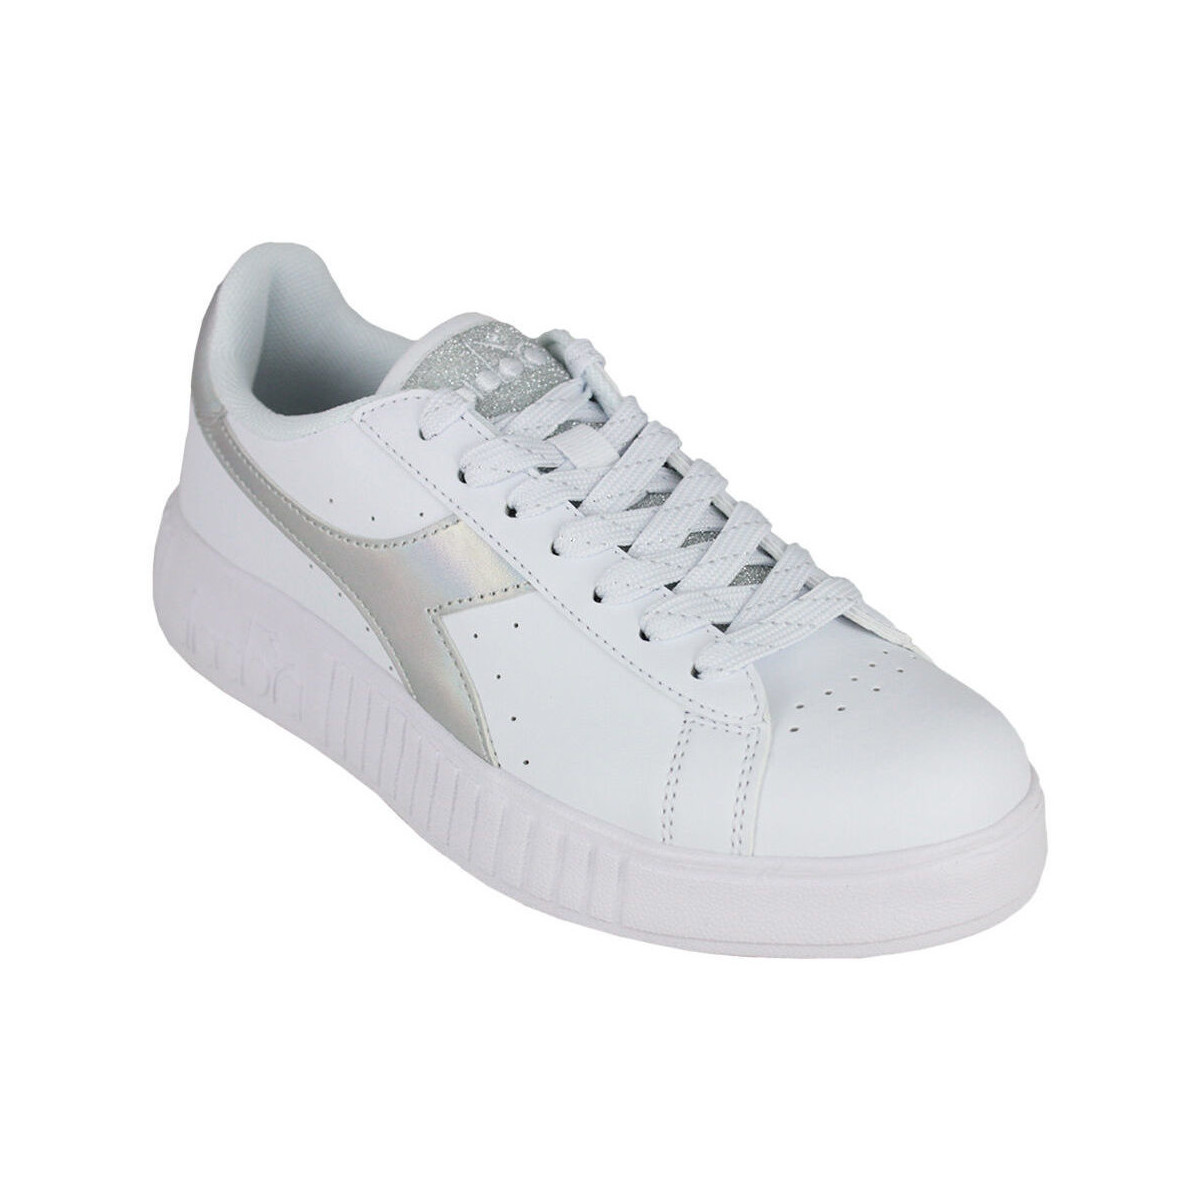 Παπούτσια Γυναίκα Sneakers Diadora 101.174366 01 C6103 White/Silver Silver